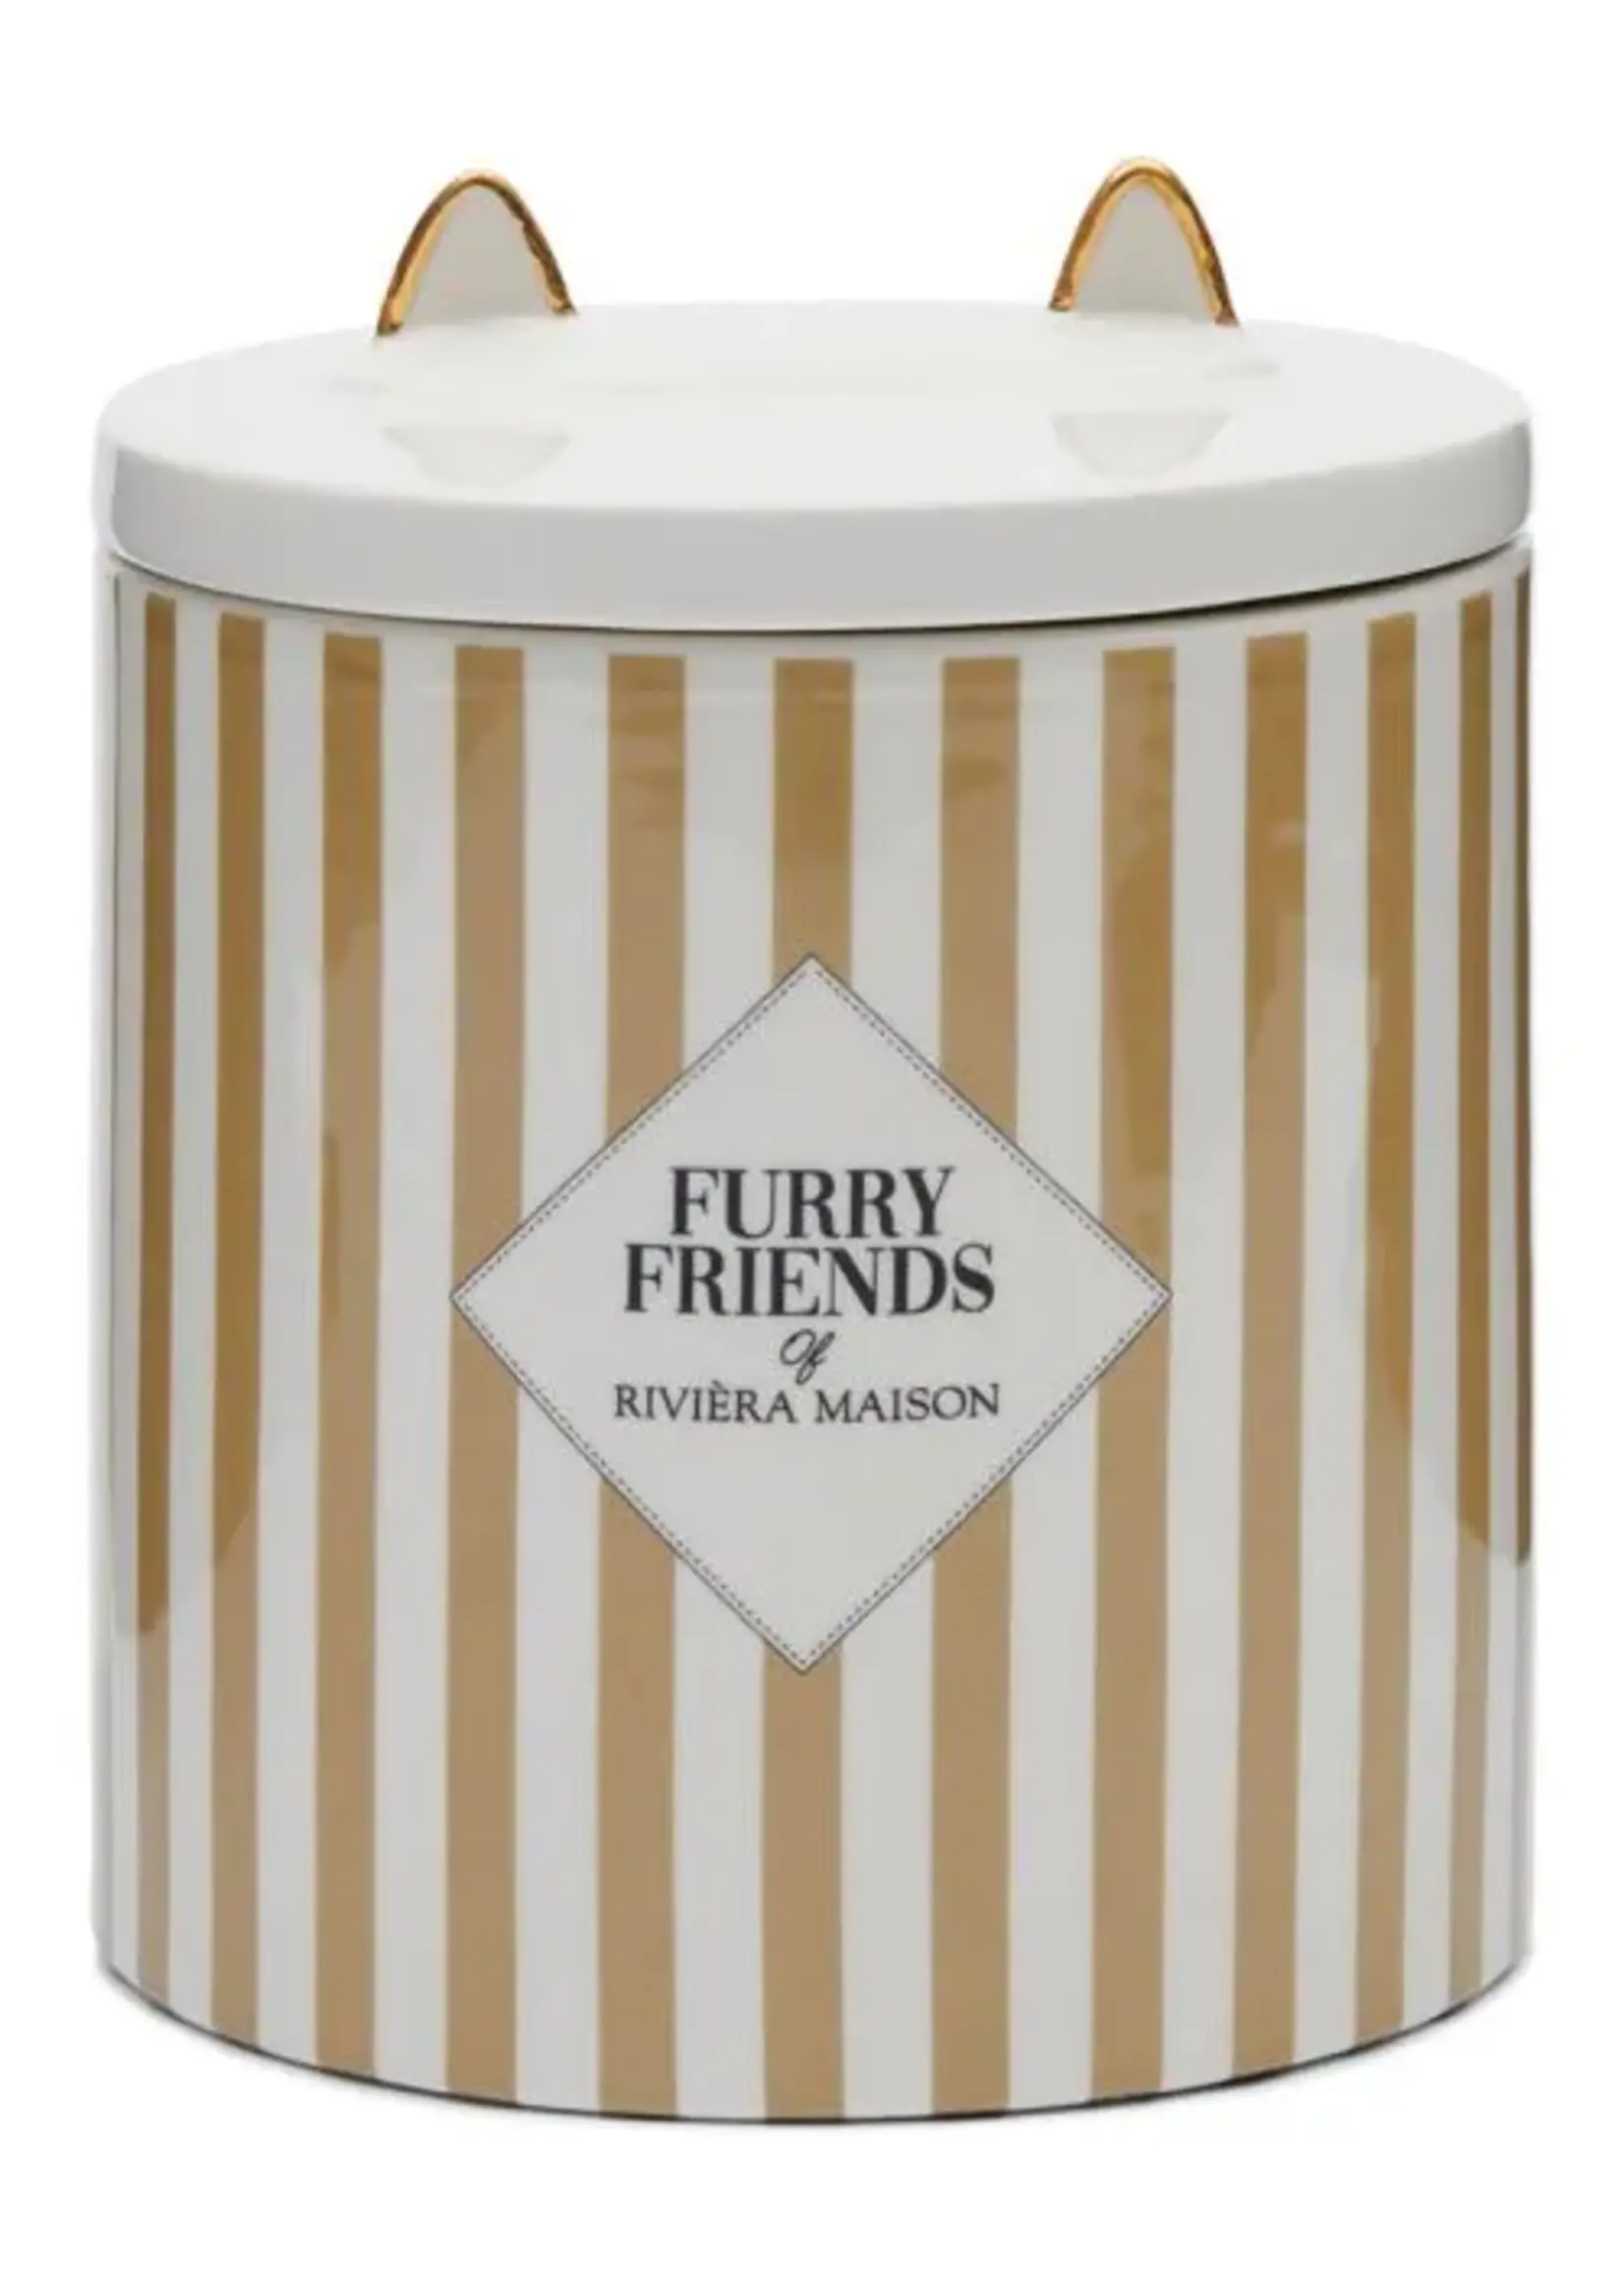 Furry Friends cat food storage jar